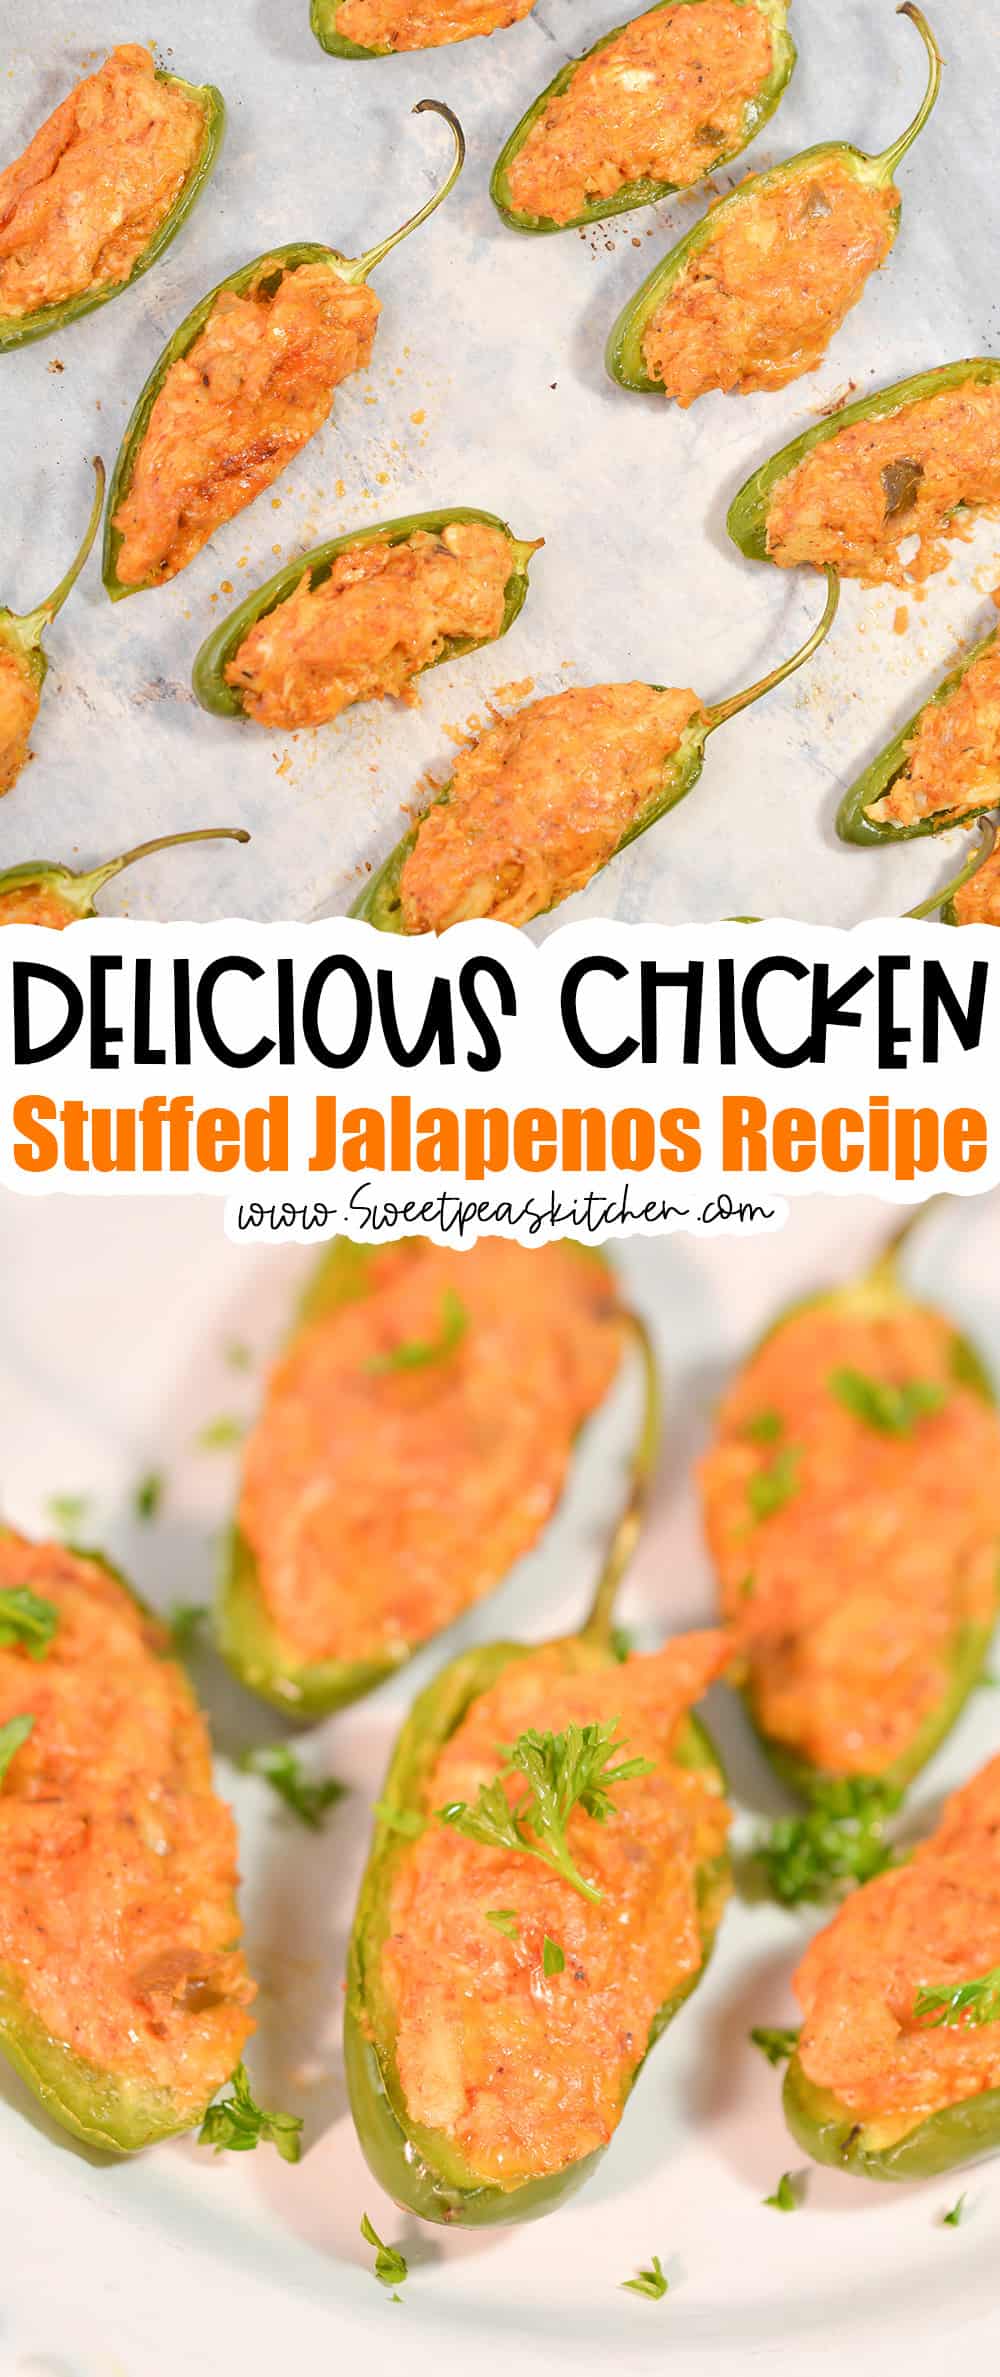 Chicken Stuffed Jalapenos on Pinterest